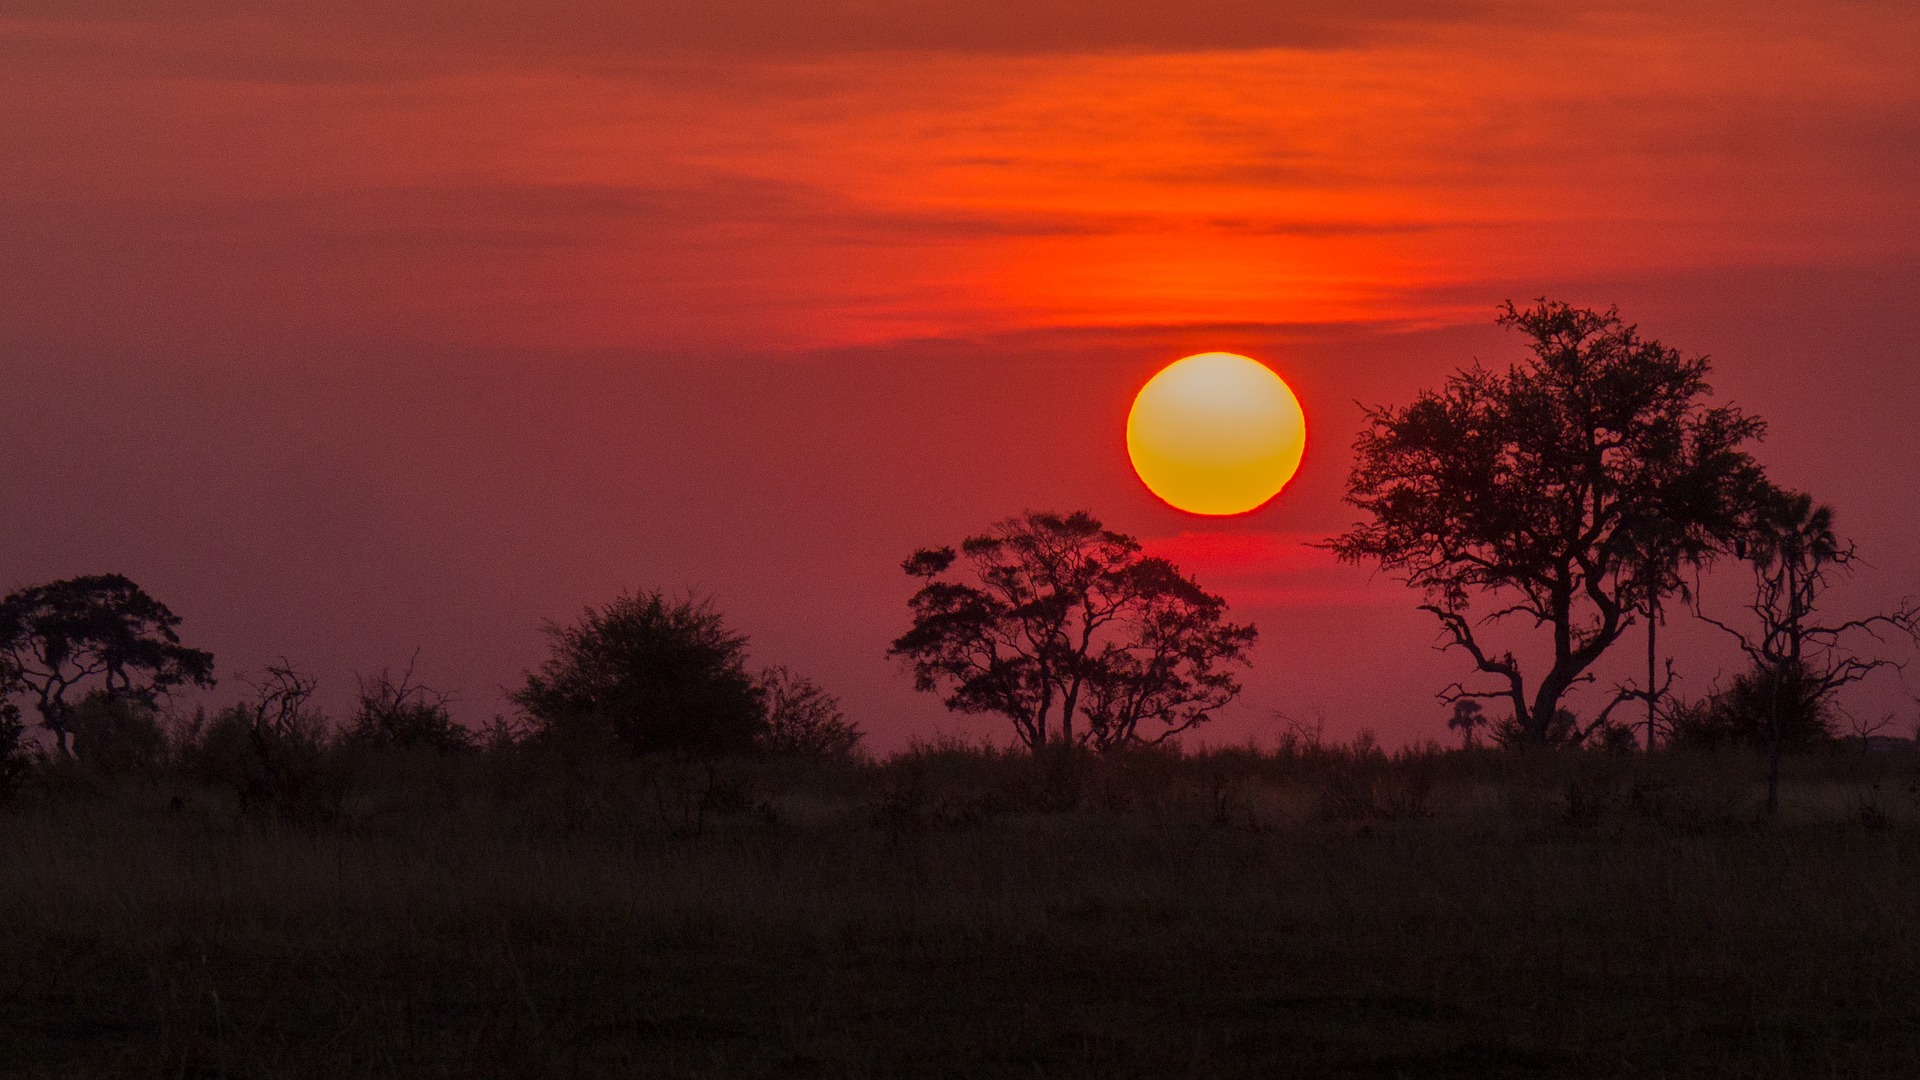 Sonnenuntergang im Okavango Delta: Im Vordergrund ist eine Wiese zu sehen, an deren Rand Bäume wie Schatten zu sehen sind. Hinter ihnen geht die Sonne vor einem rotgefärbten Himmel unter.